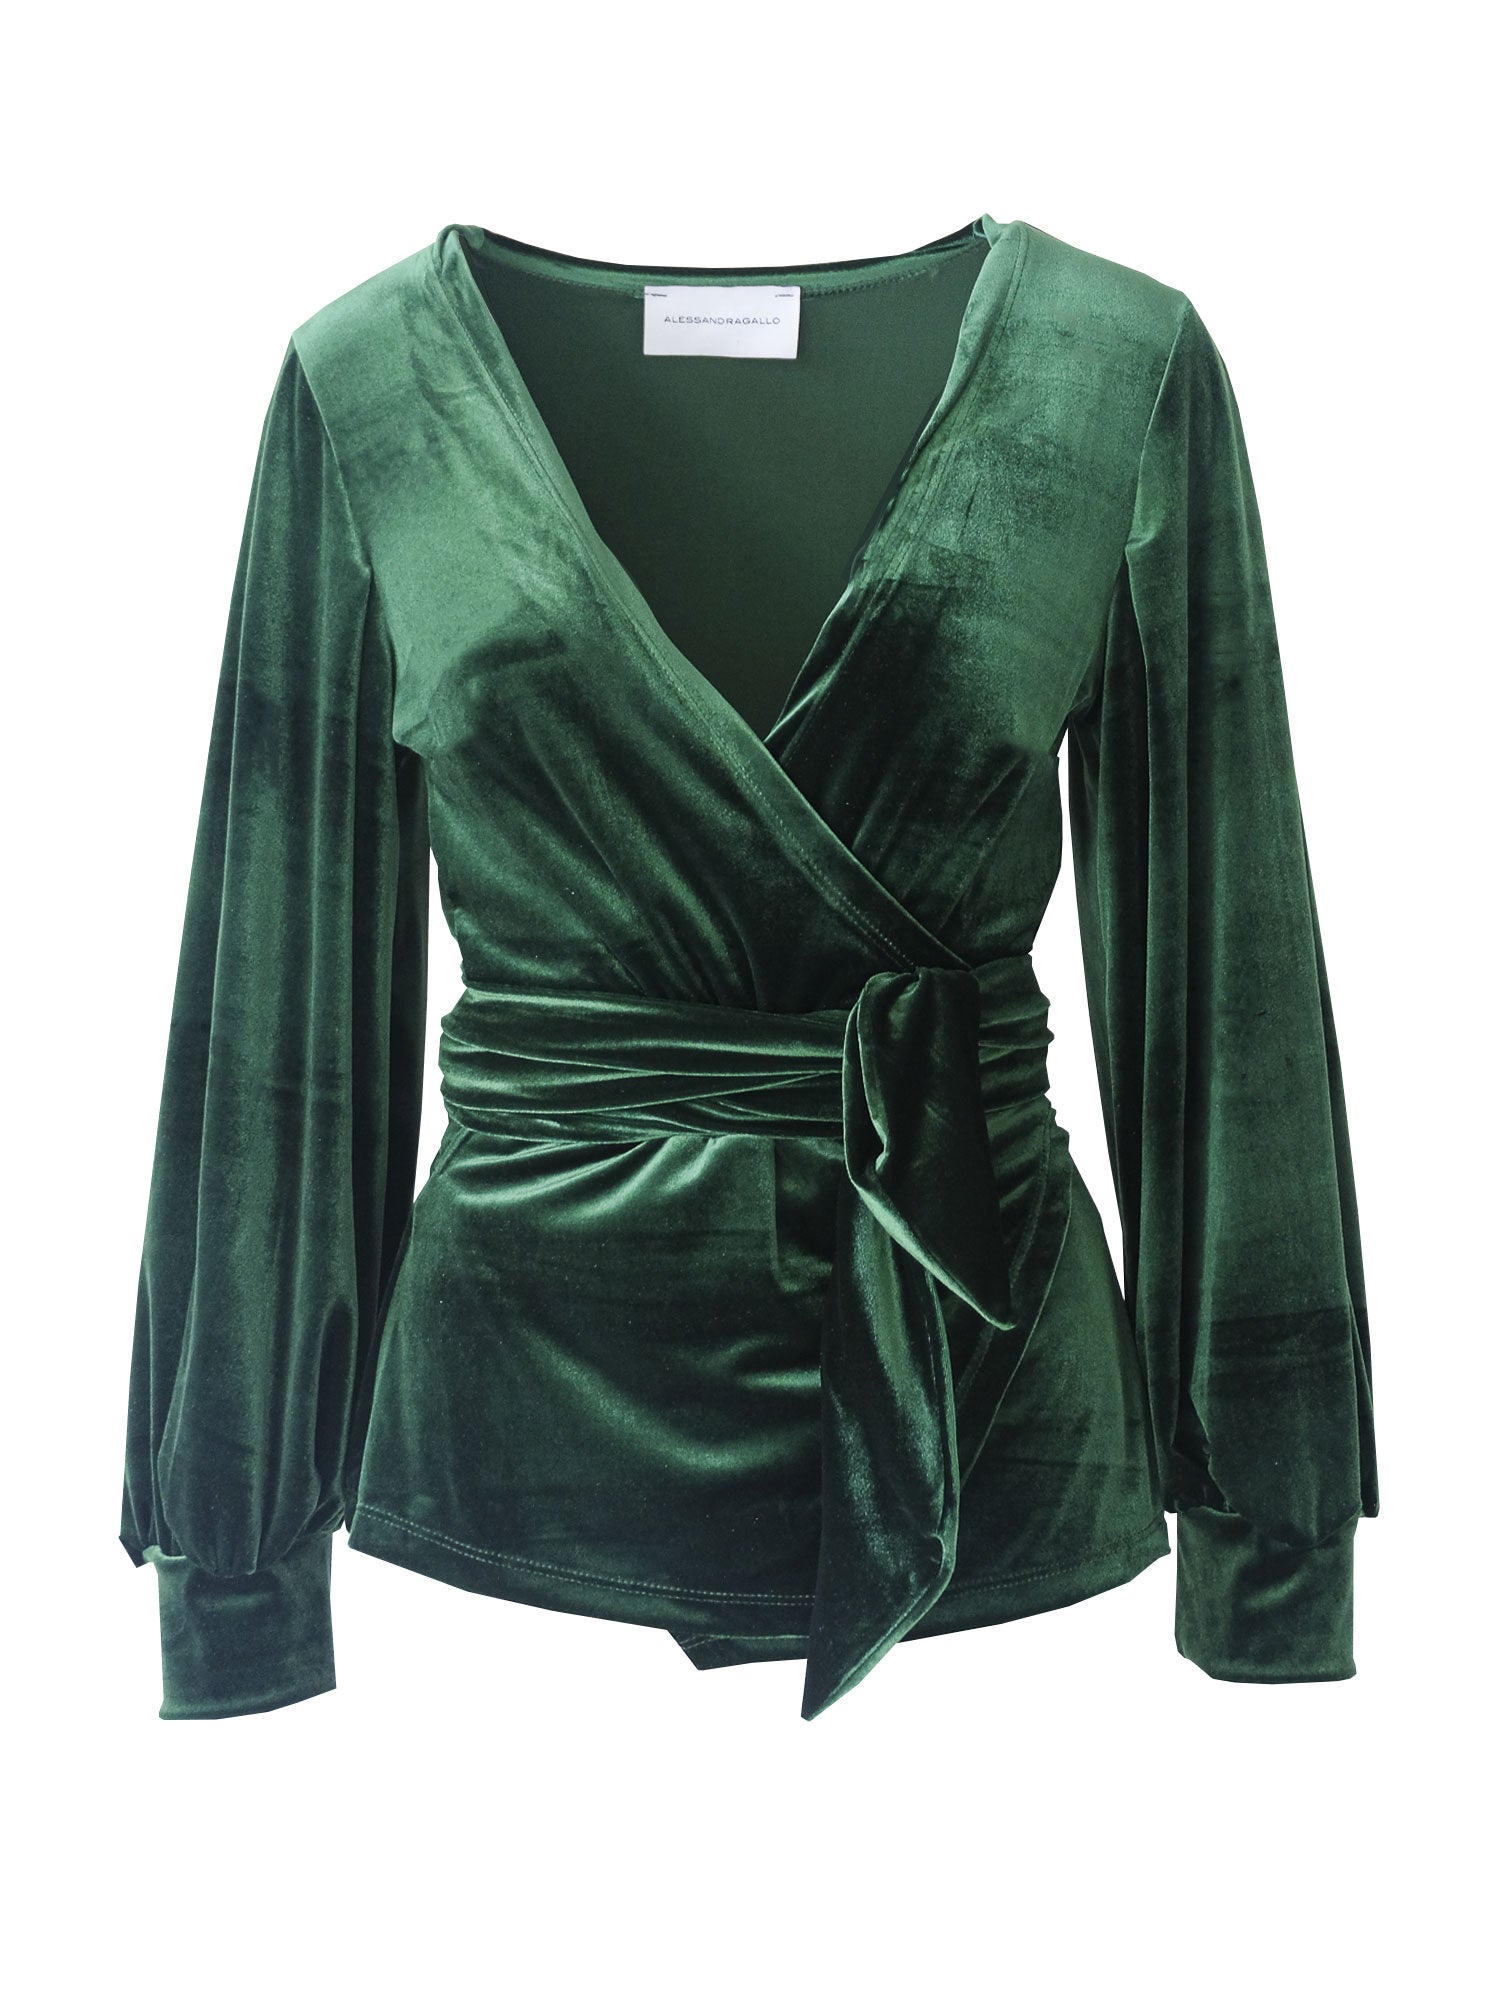 CLOE - kimono blouse in emerald green chenille